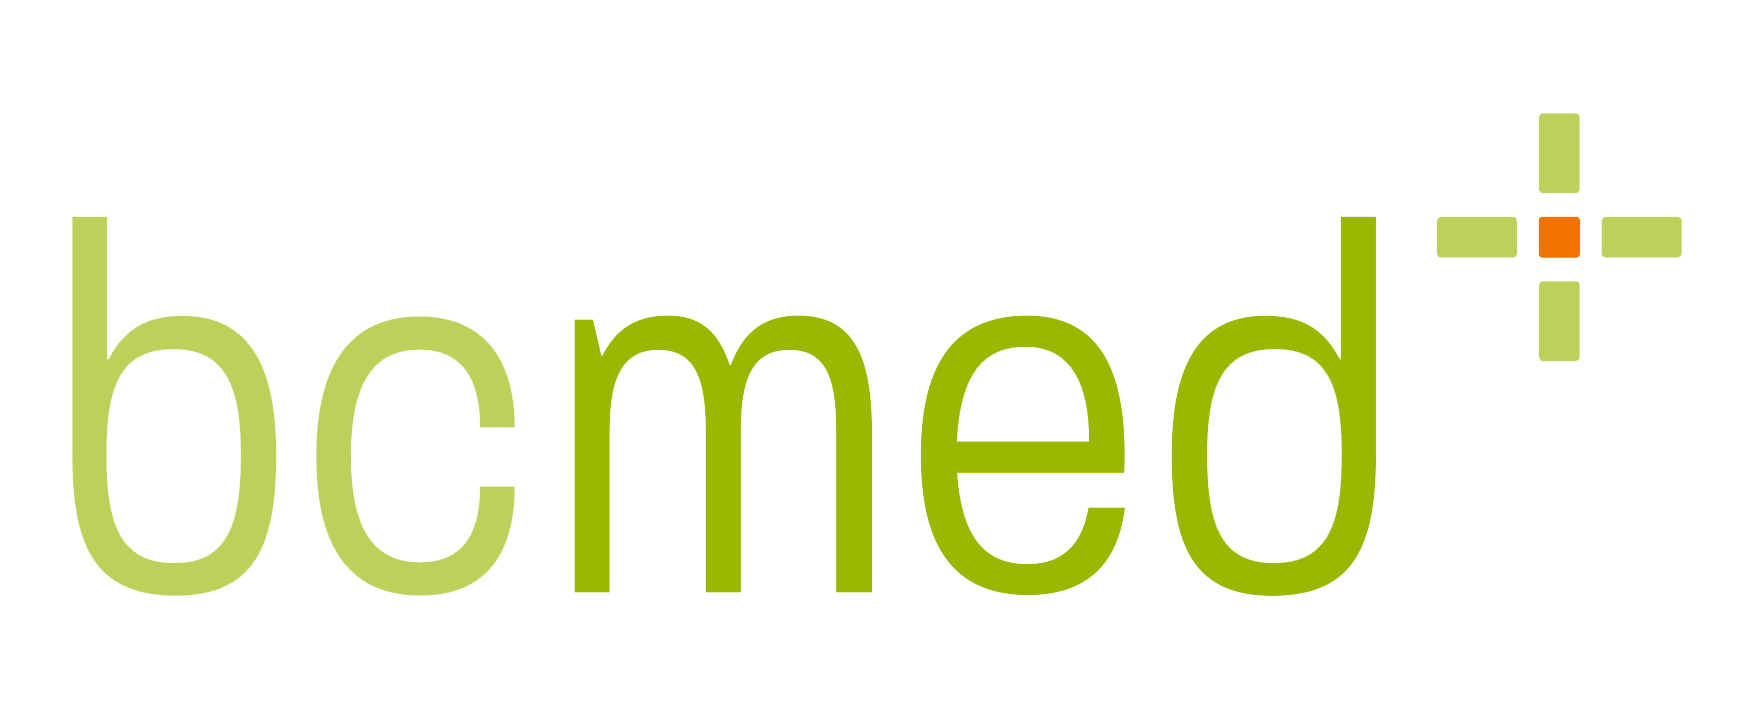 bcmed-logo-001